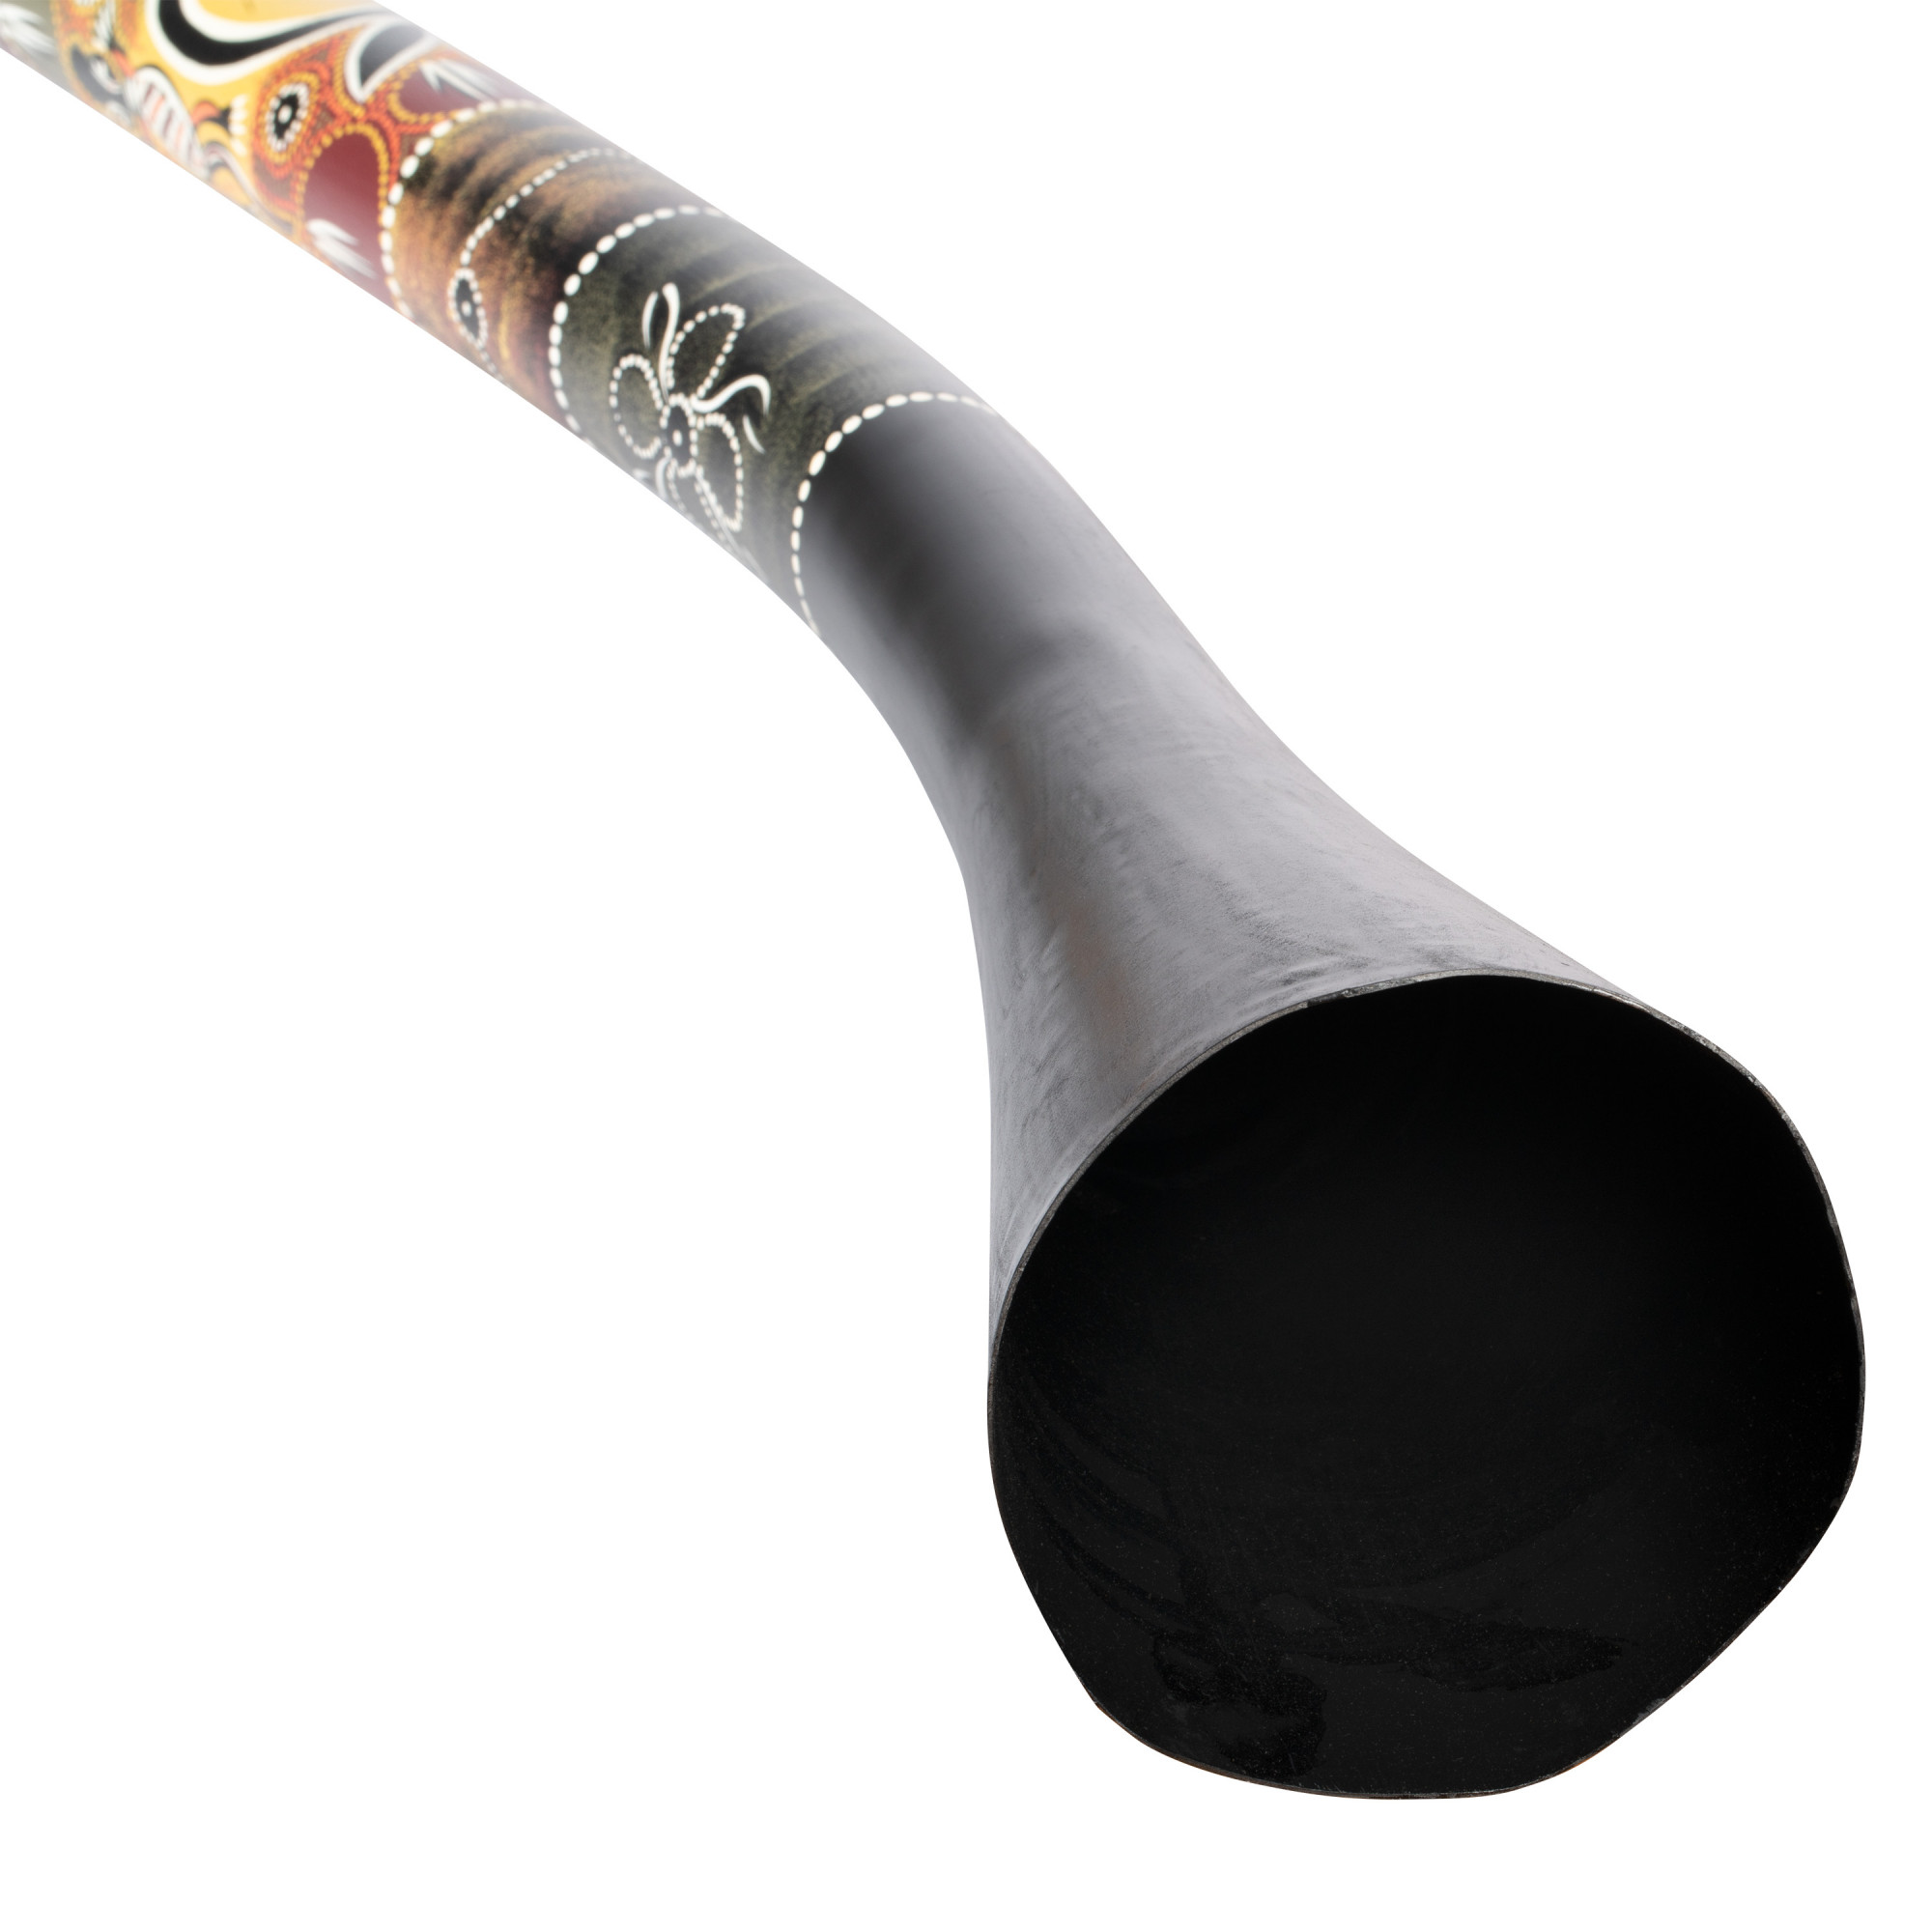 MEINL Percussion Pro Synthetic Didgeridoo black (PROSDDG1-BK) Wood  Didgeridoos Didgeridoos Meinl Percussion MEINL Shop